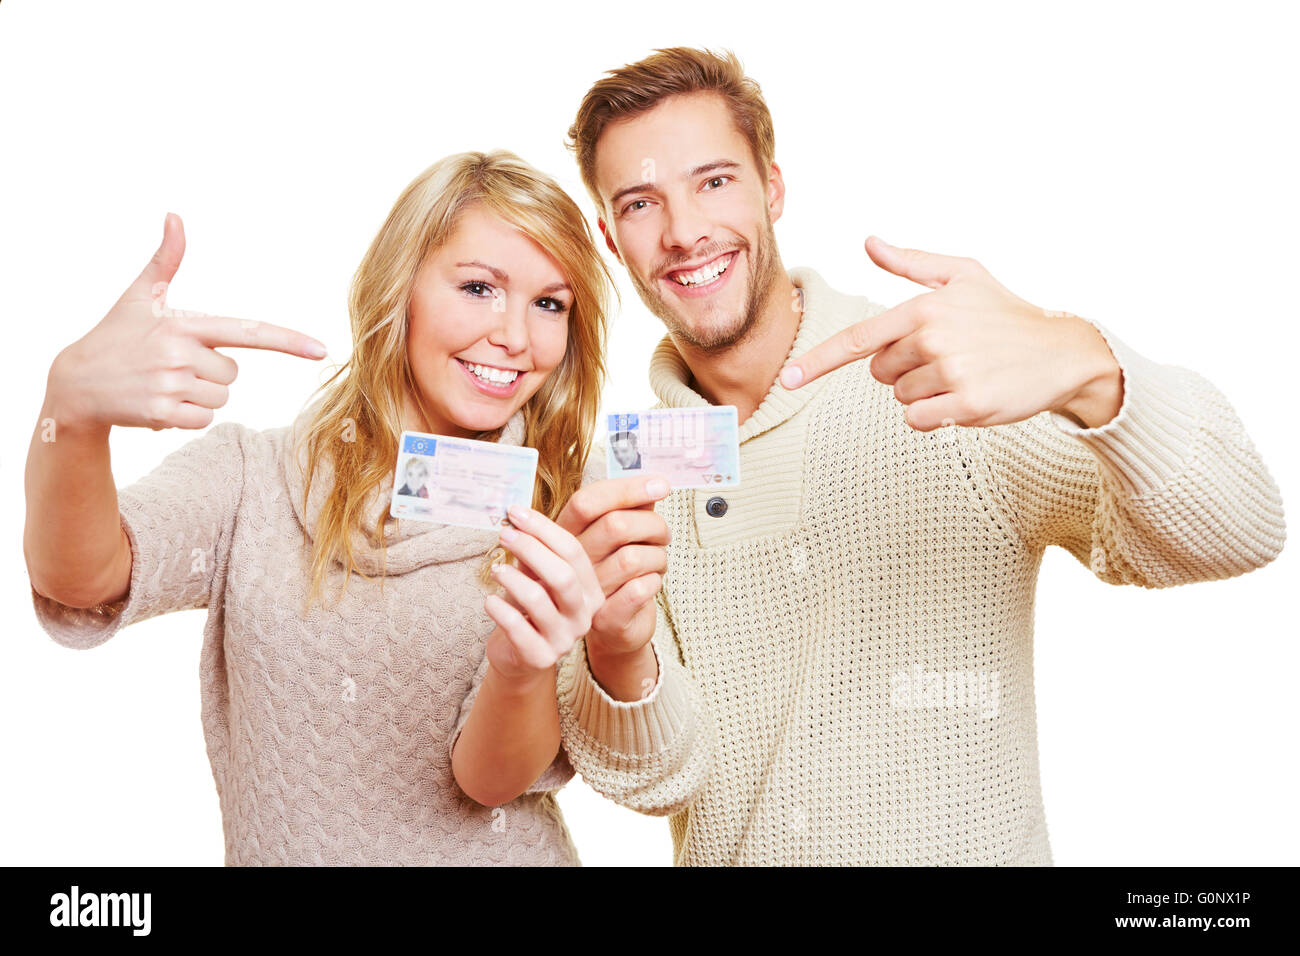 Deux heureux adolescent montrant fièrement leurs permis de conduire allemand Banque D'Images